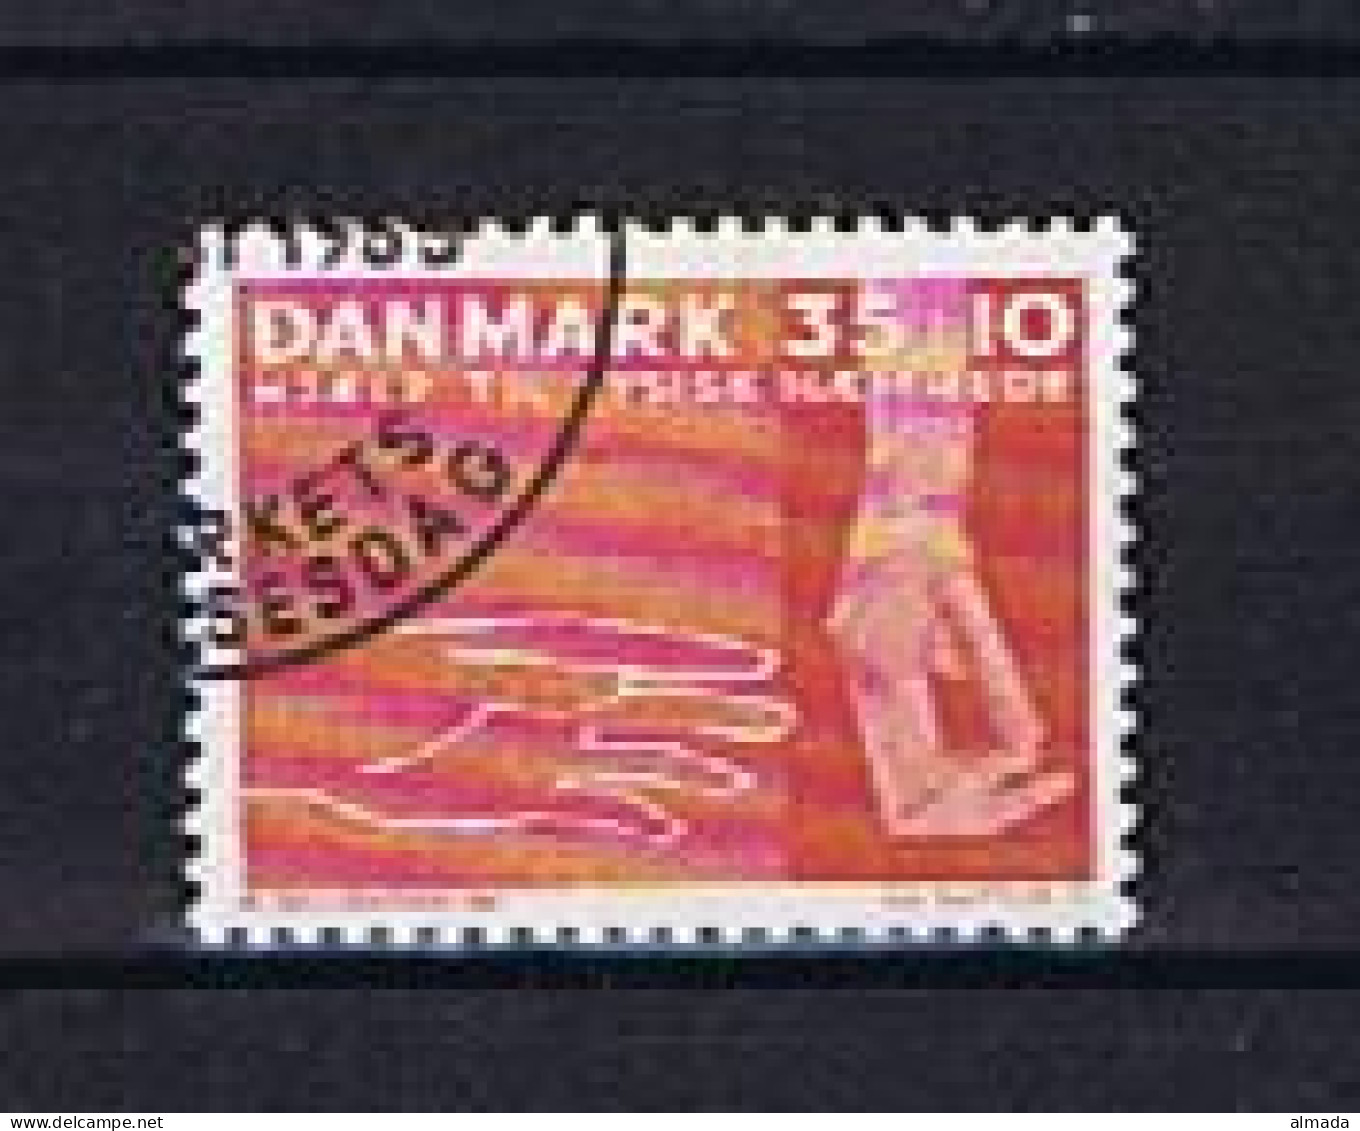 Dänemark, Denmark 1963: Michel 415x Norm. Papier Gestempelt, Used - Usati